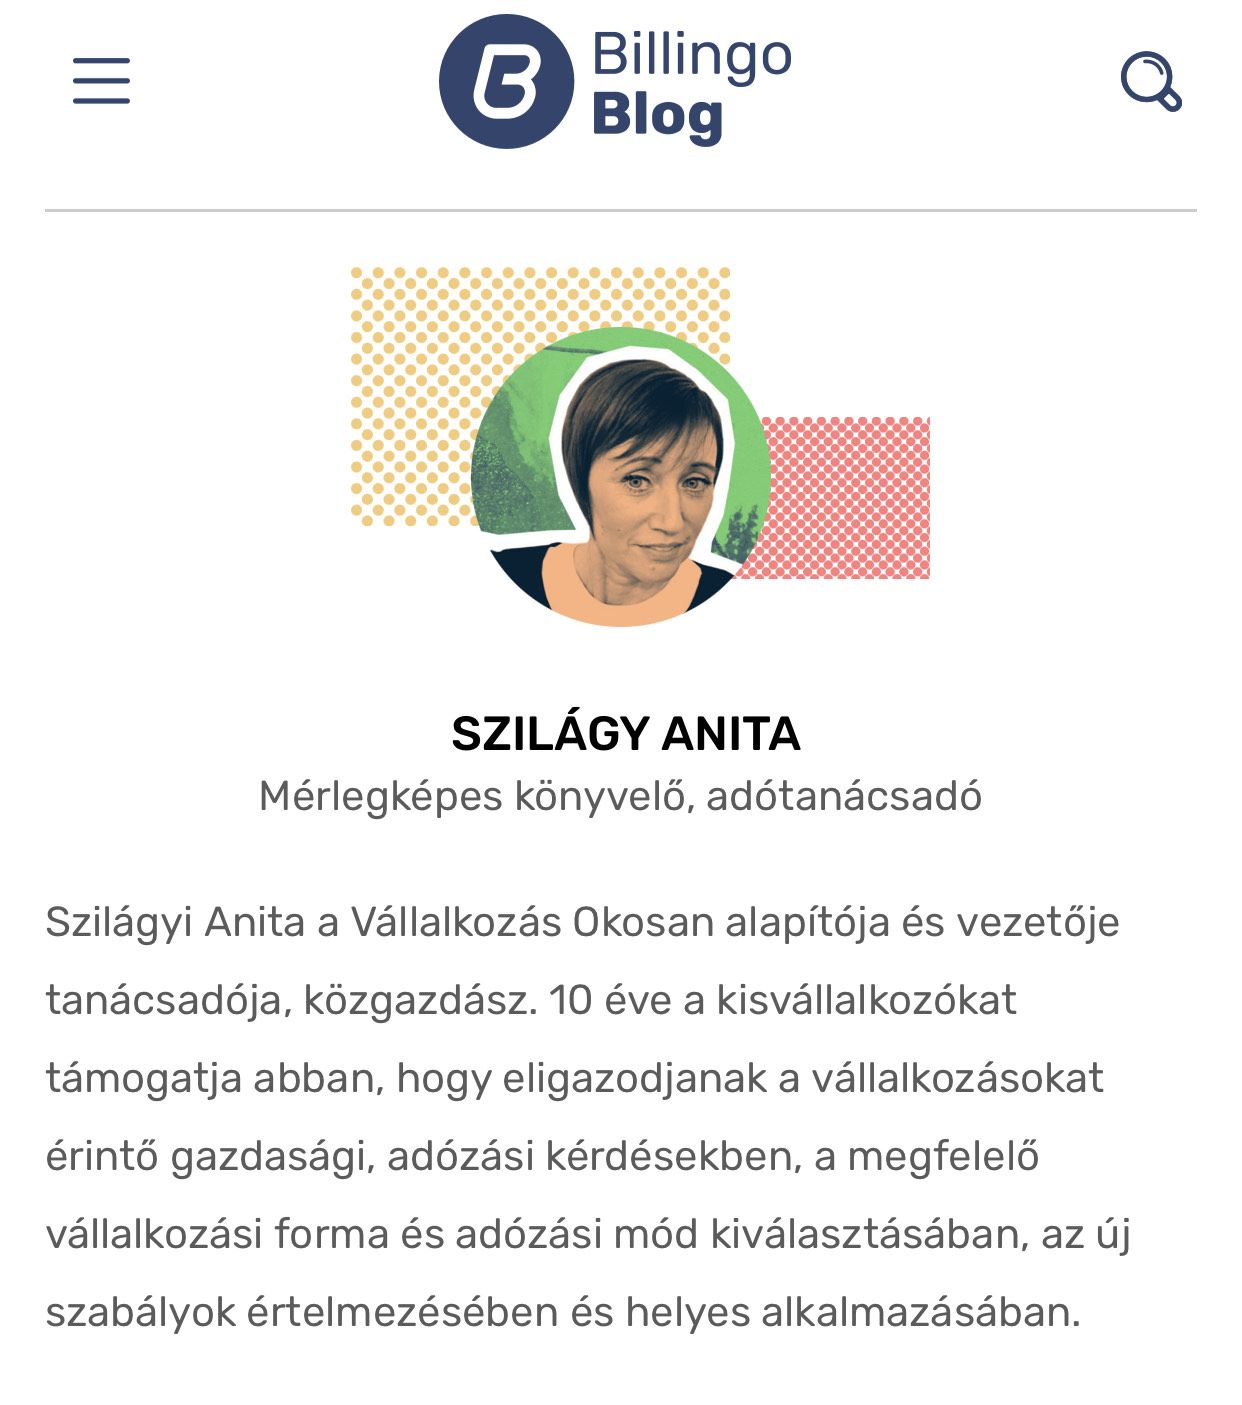 Szilágyi Anita - Billingo